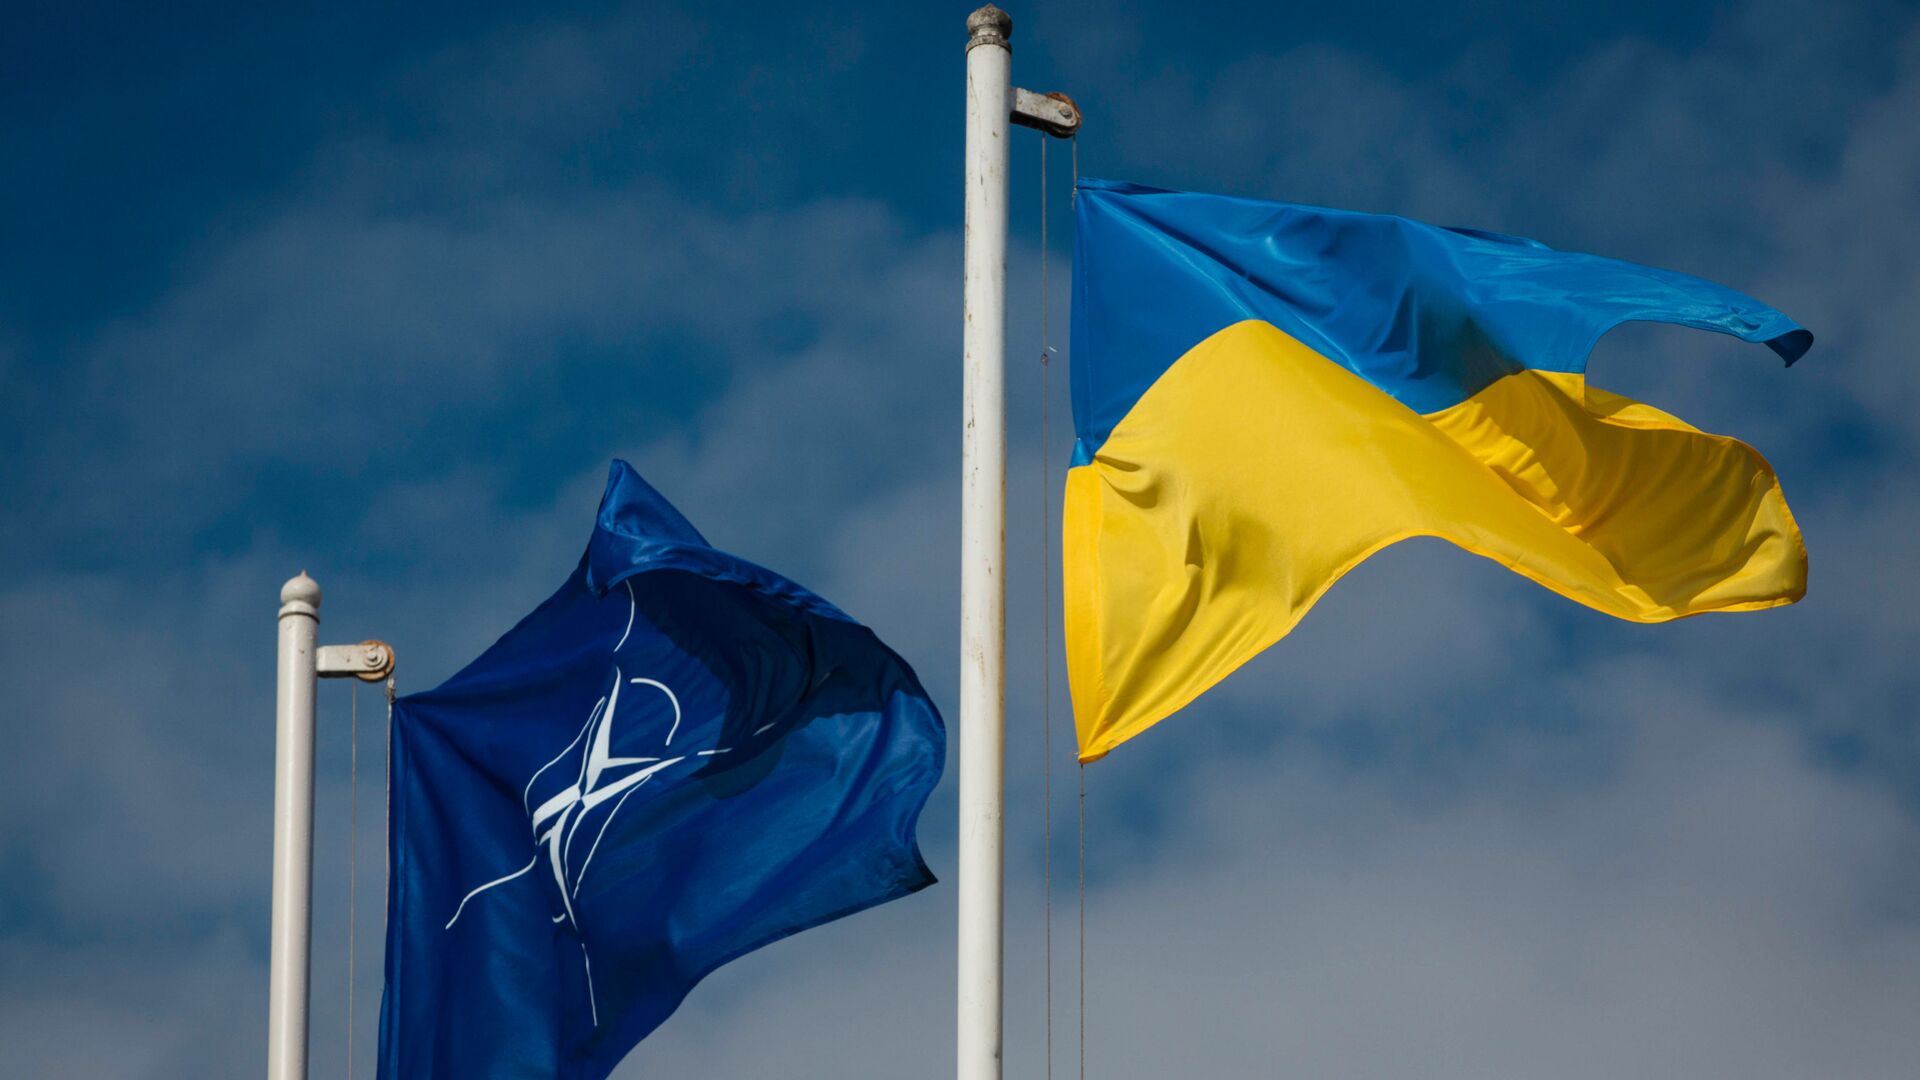 Национальный флаг Украины и флаг Организации Североатлантического договора (НАТО) - Sputnik Lietuva, 1920, 19.04.2021